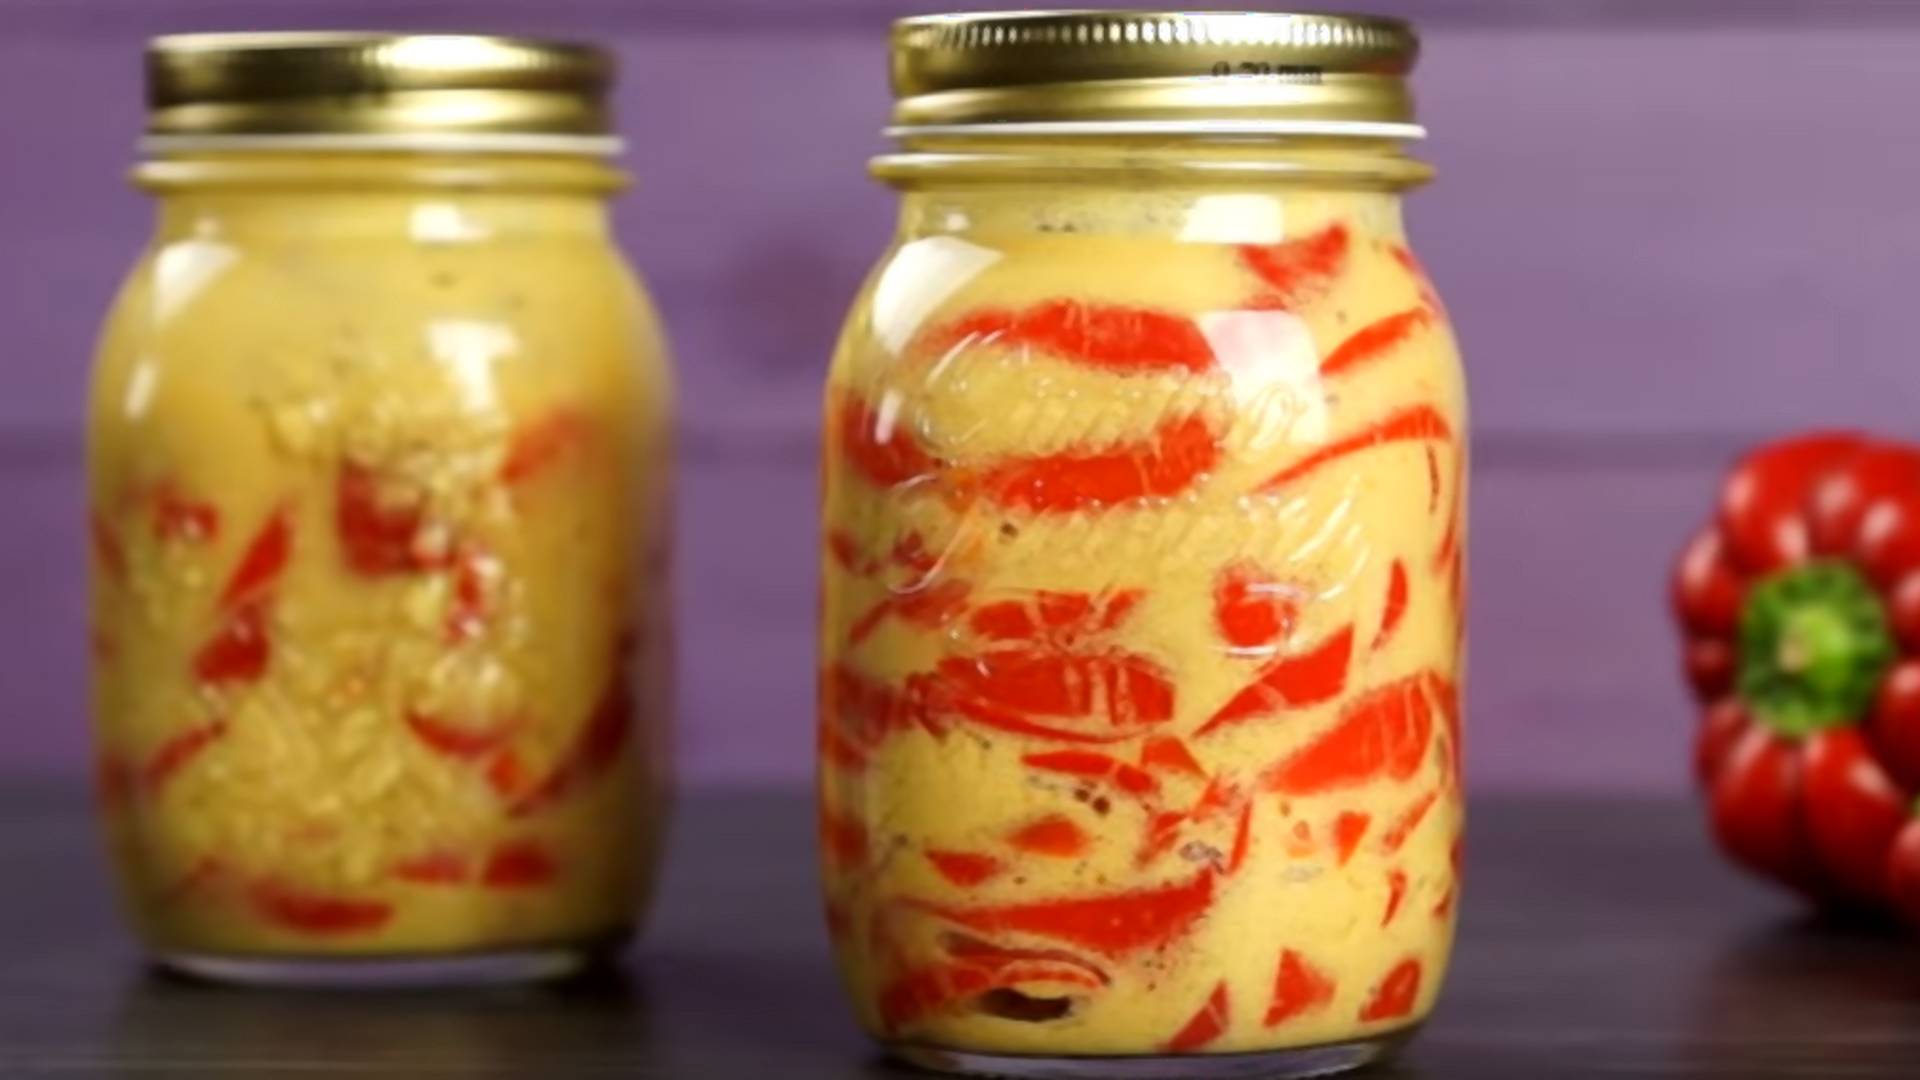 Svi jedemo paprike u pavlaci, ali u senfu su još bolje - ovo je definitivno najukusnija zimnica koja postoji